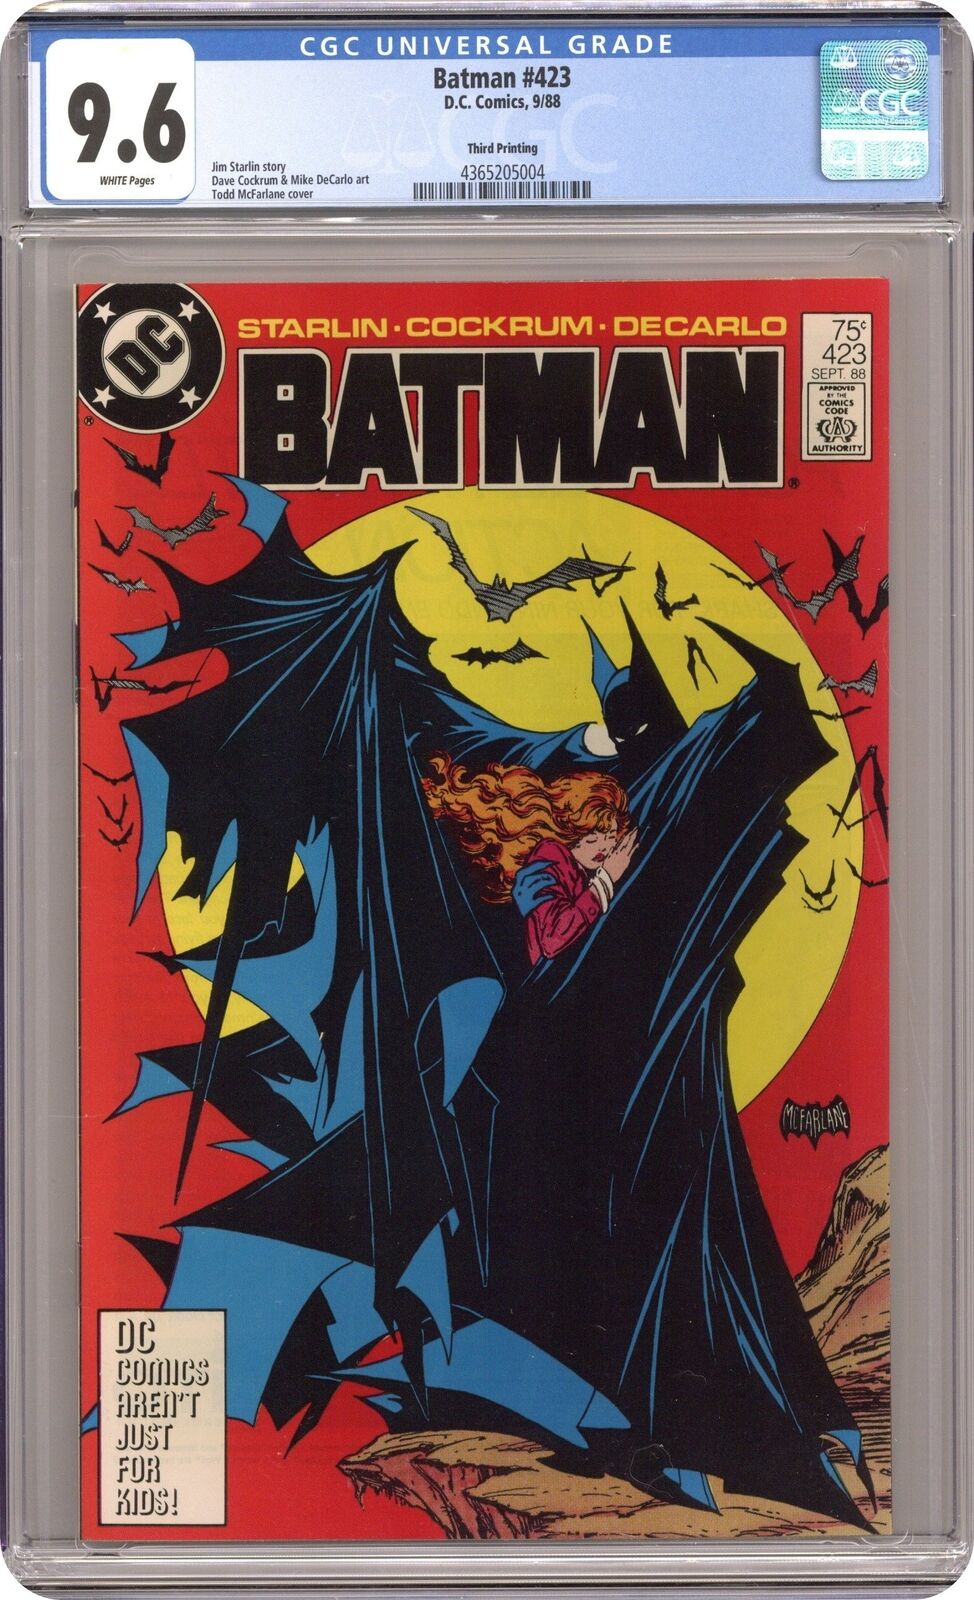 Batman #423 Reprint CGC 9.6 1988 4365205004